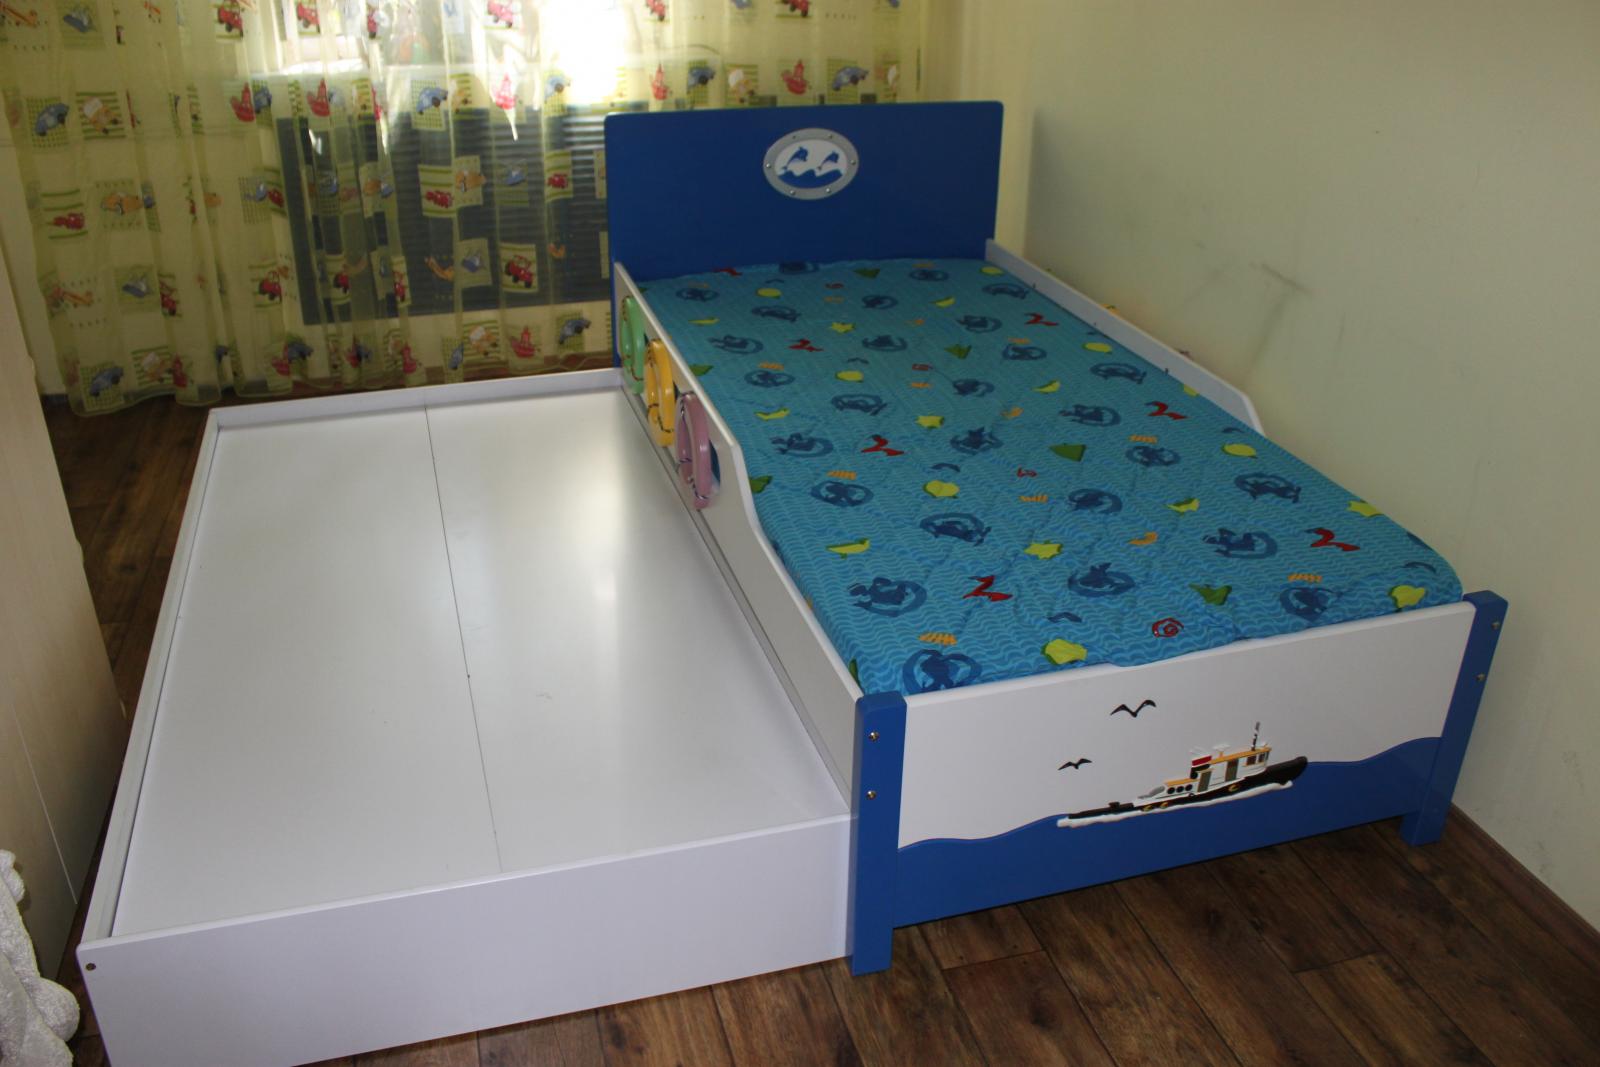 детская кровать трехъярусная выкатная выдвижная для детского сада